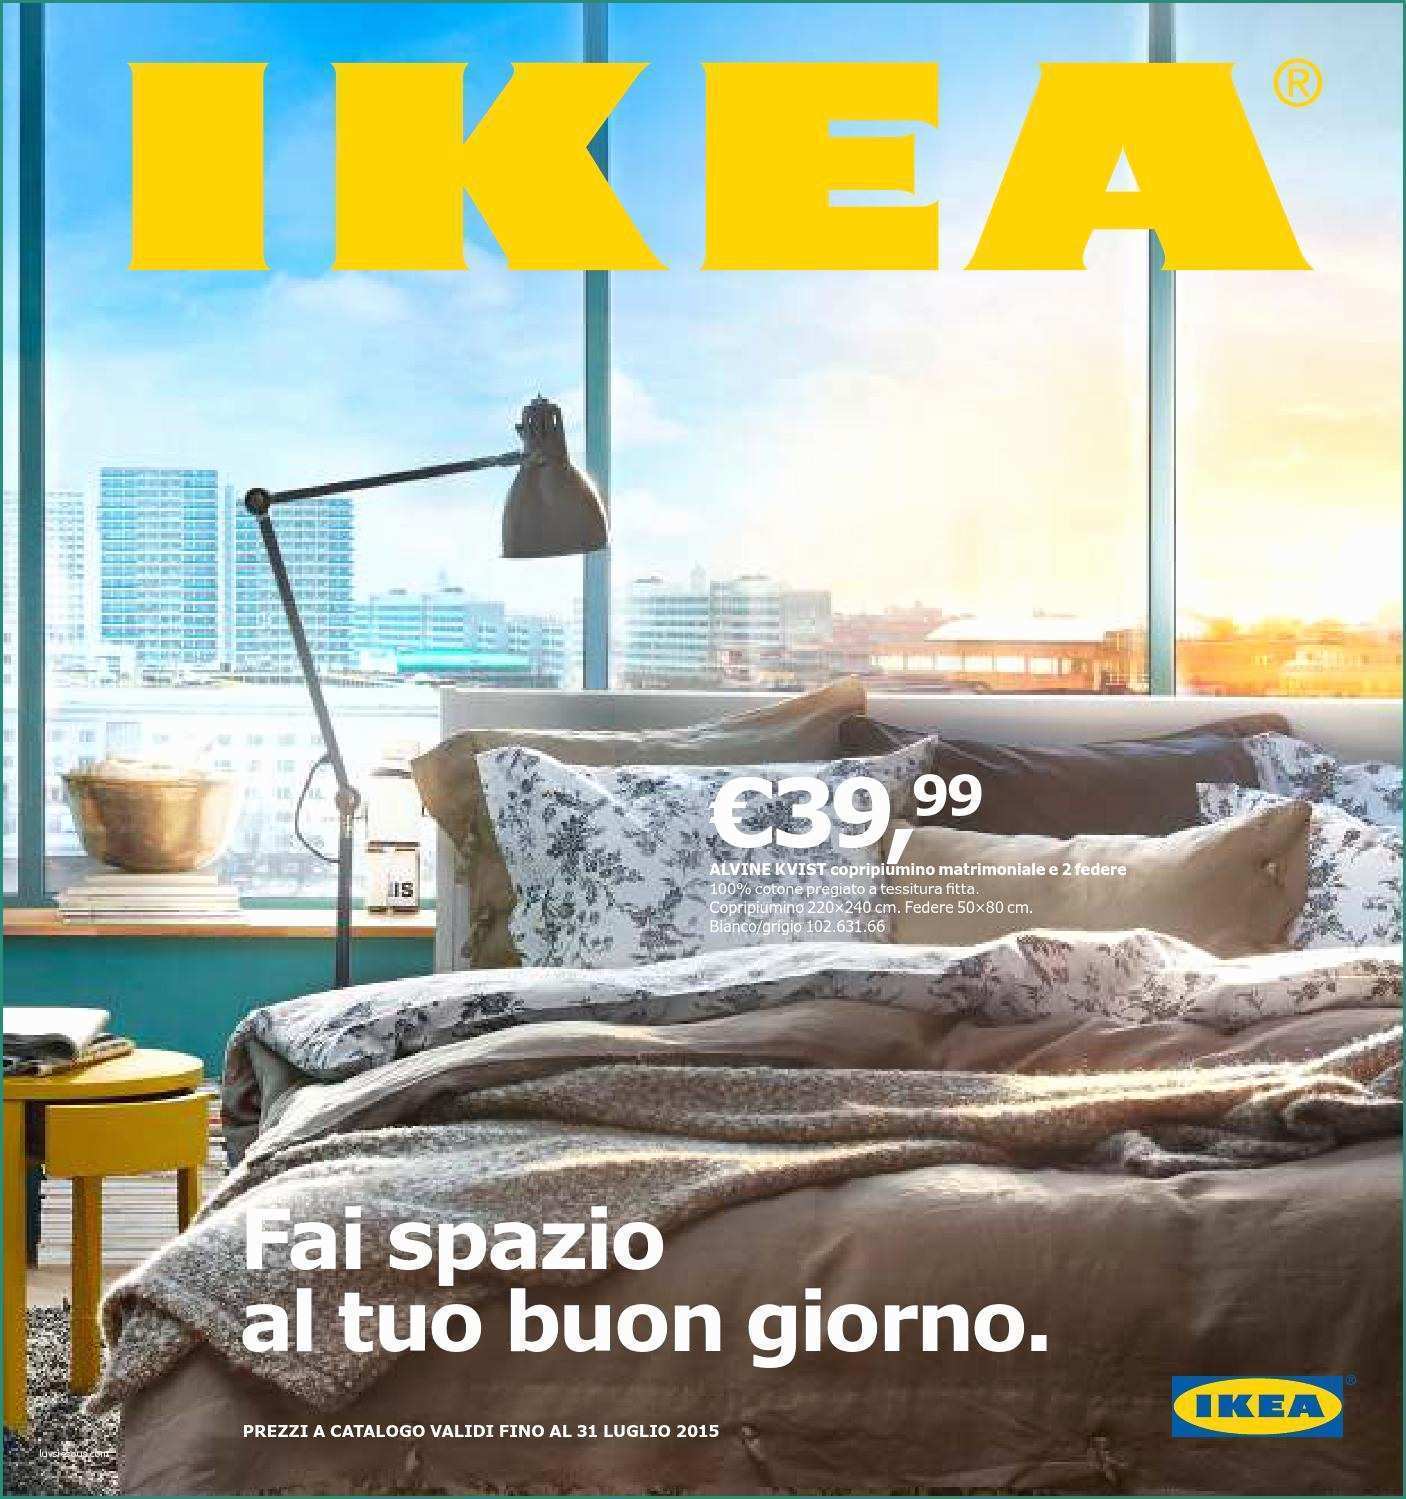 Ritiro Mobili Usati Mondo Convenienza E Ikea 31lug15 by Volantinoweb Vola issuu